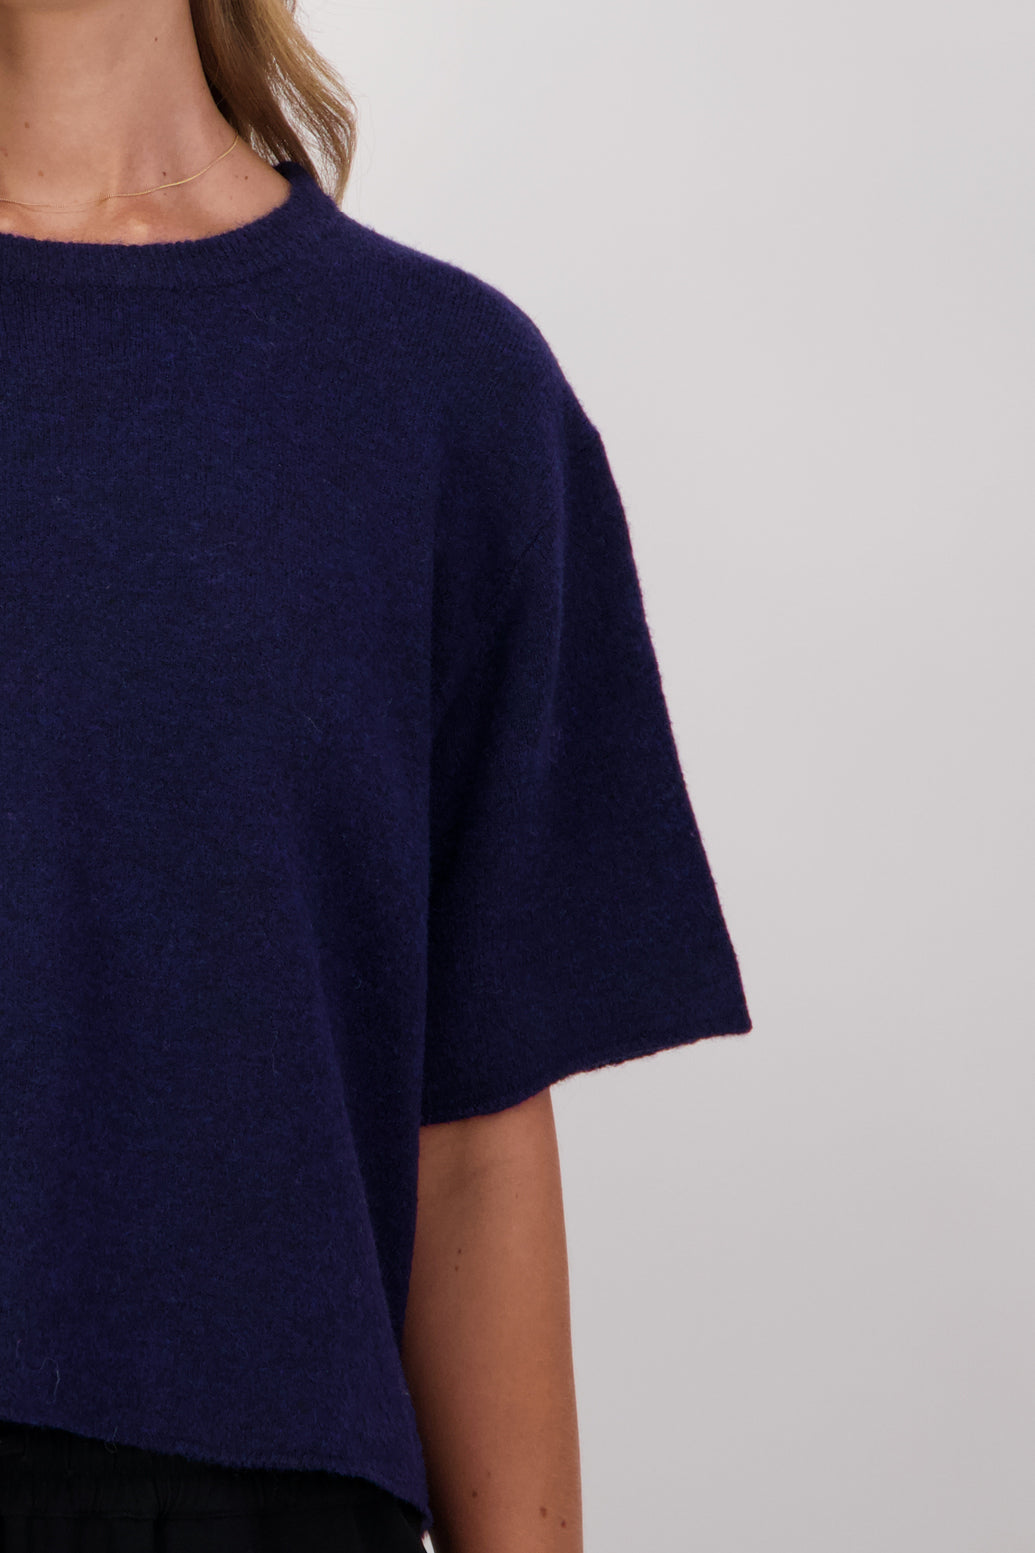 Dapper Wool Blend Short Sleeve Top/T-Shirt - Ink